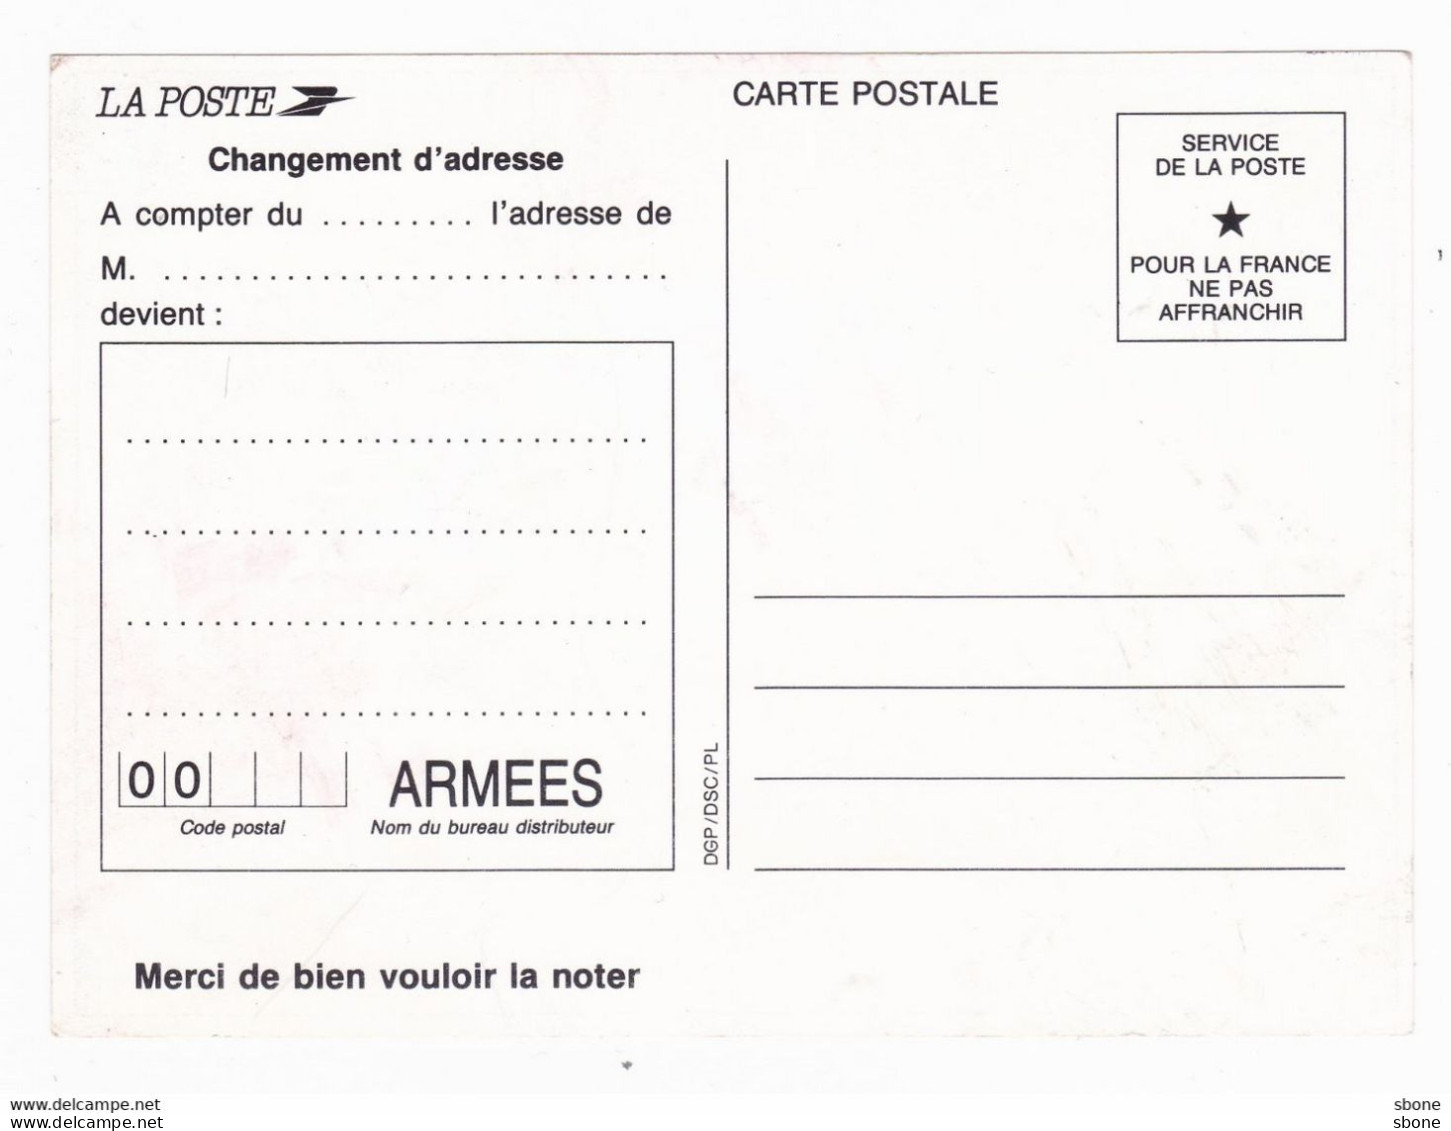 Carte En Franchise Militaire - Et Surtout N'oubliez Pas Notre Code Postal - Lettres & Documents